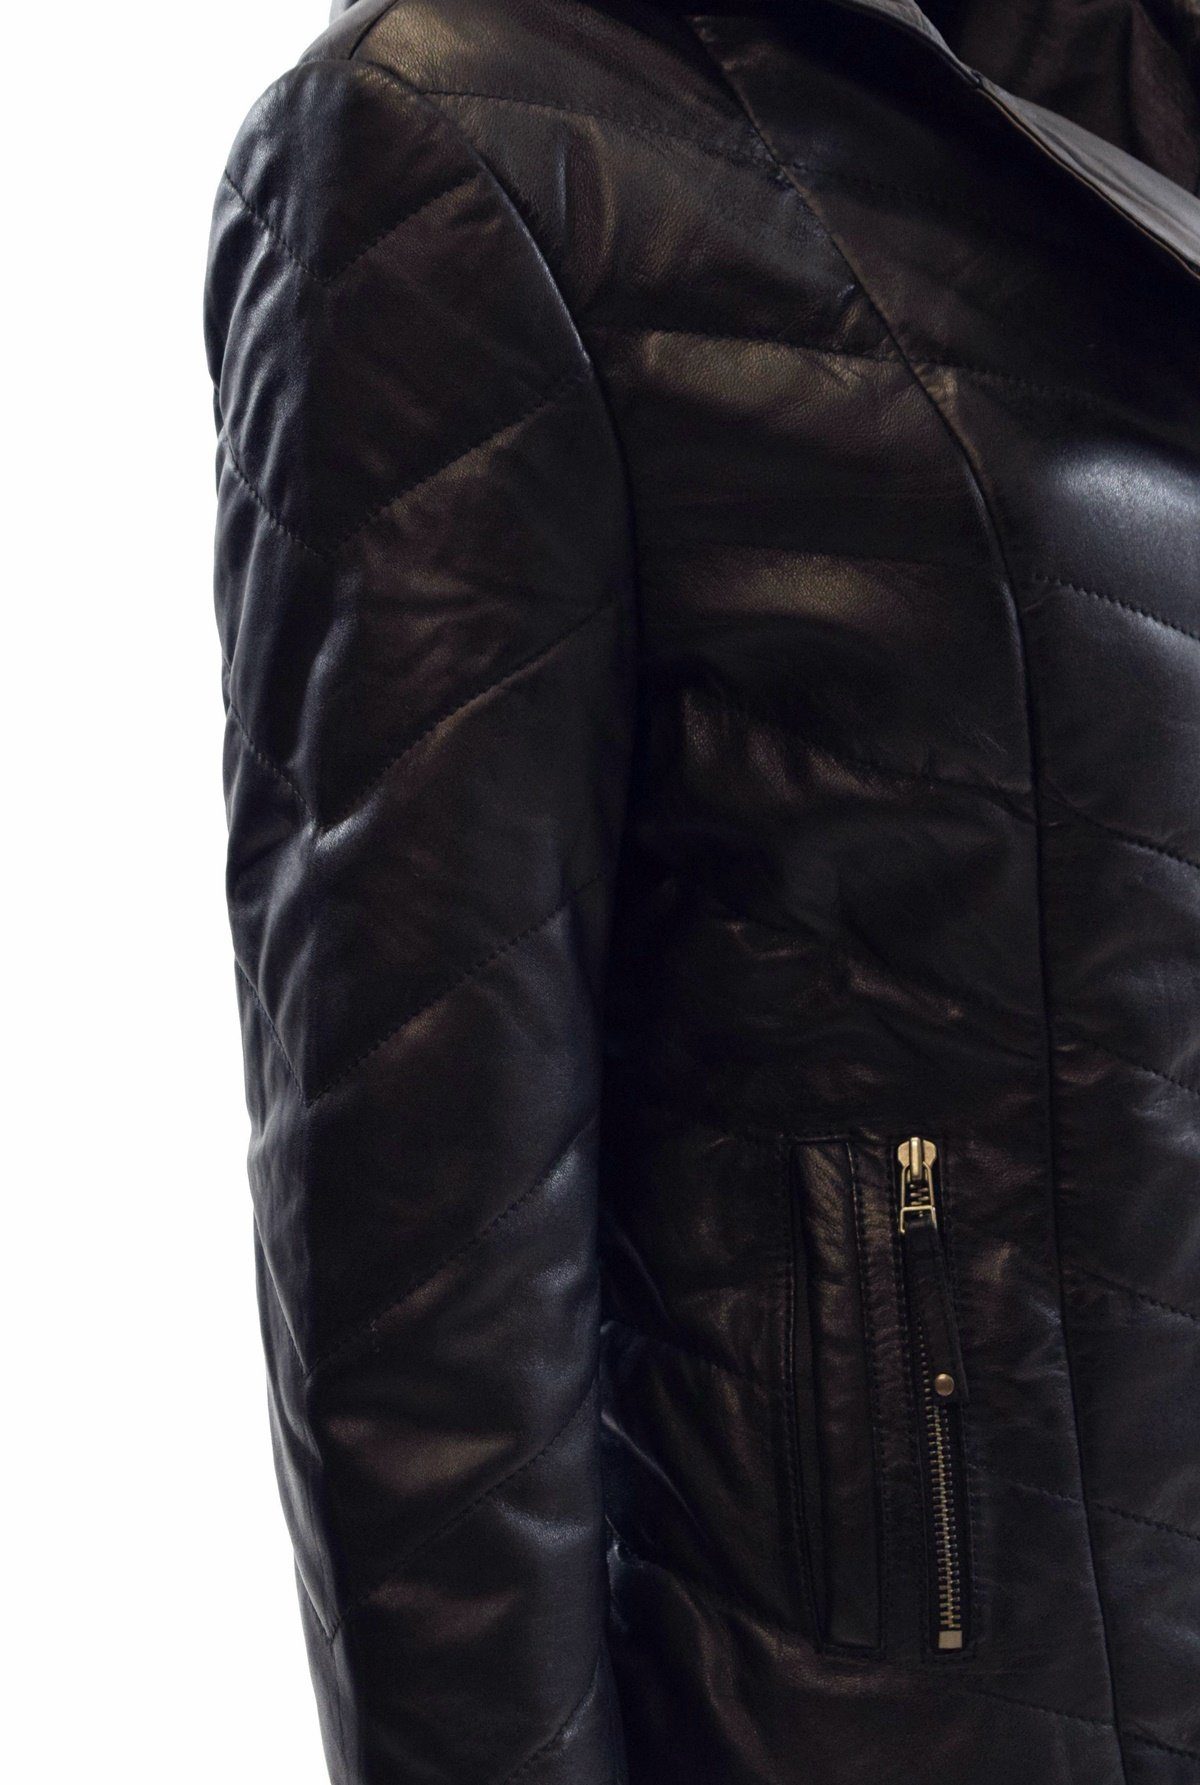 Elda Leather weichem Schwarz, Braun mit Zimmert Kapuze aus Leder Stepp-Lederjacke Lederjacke